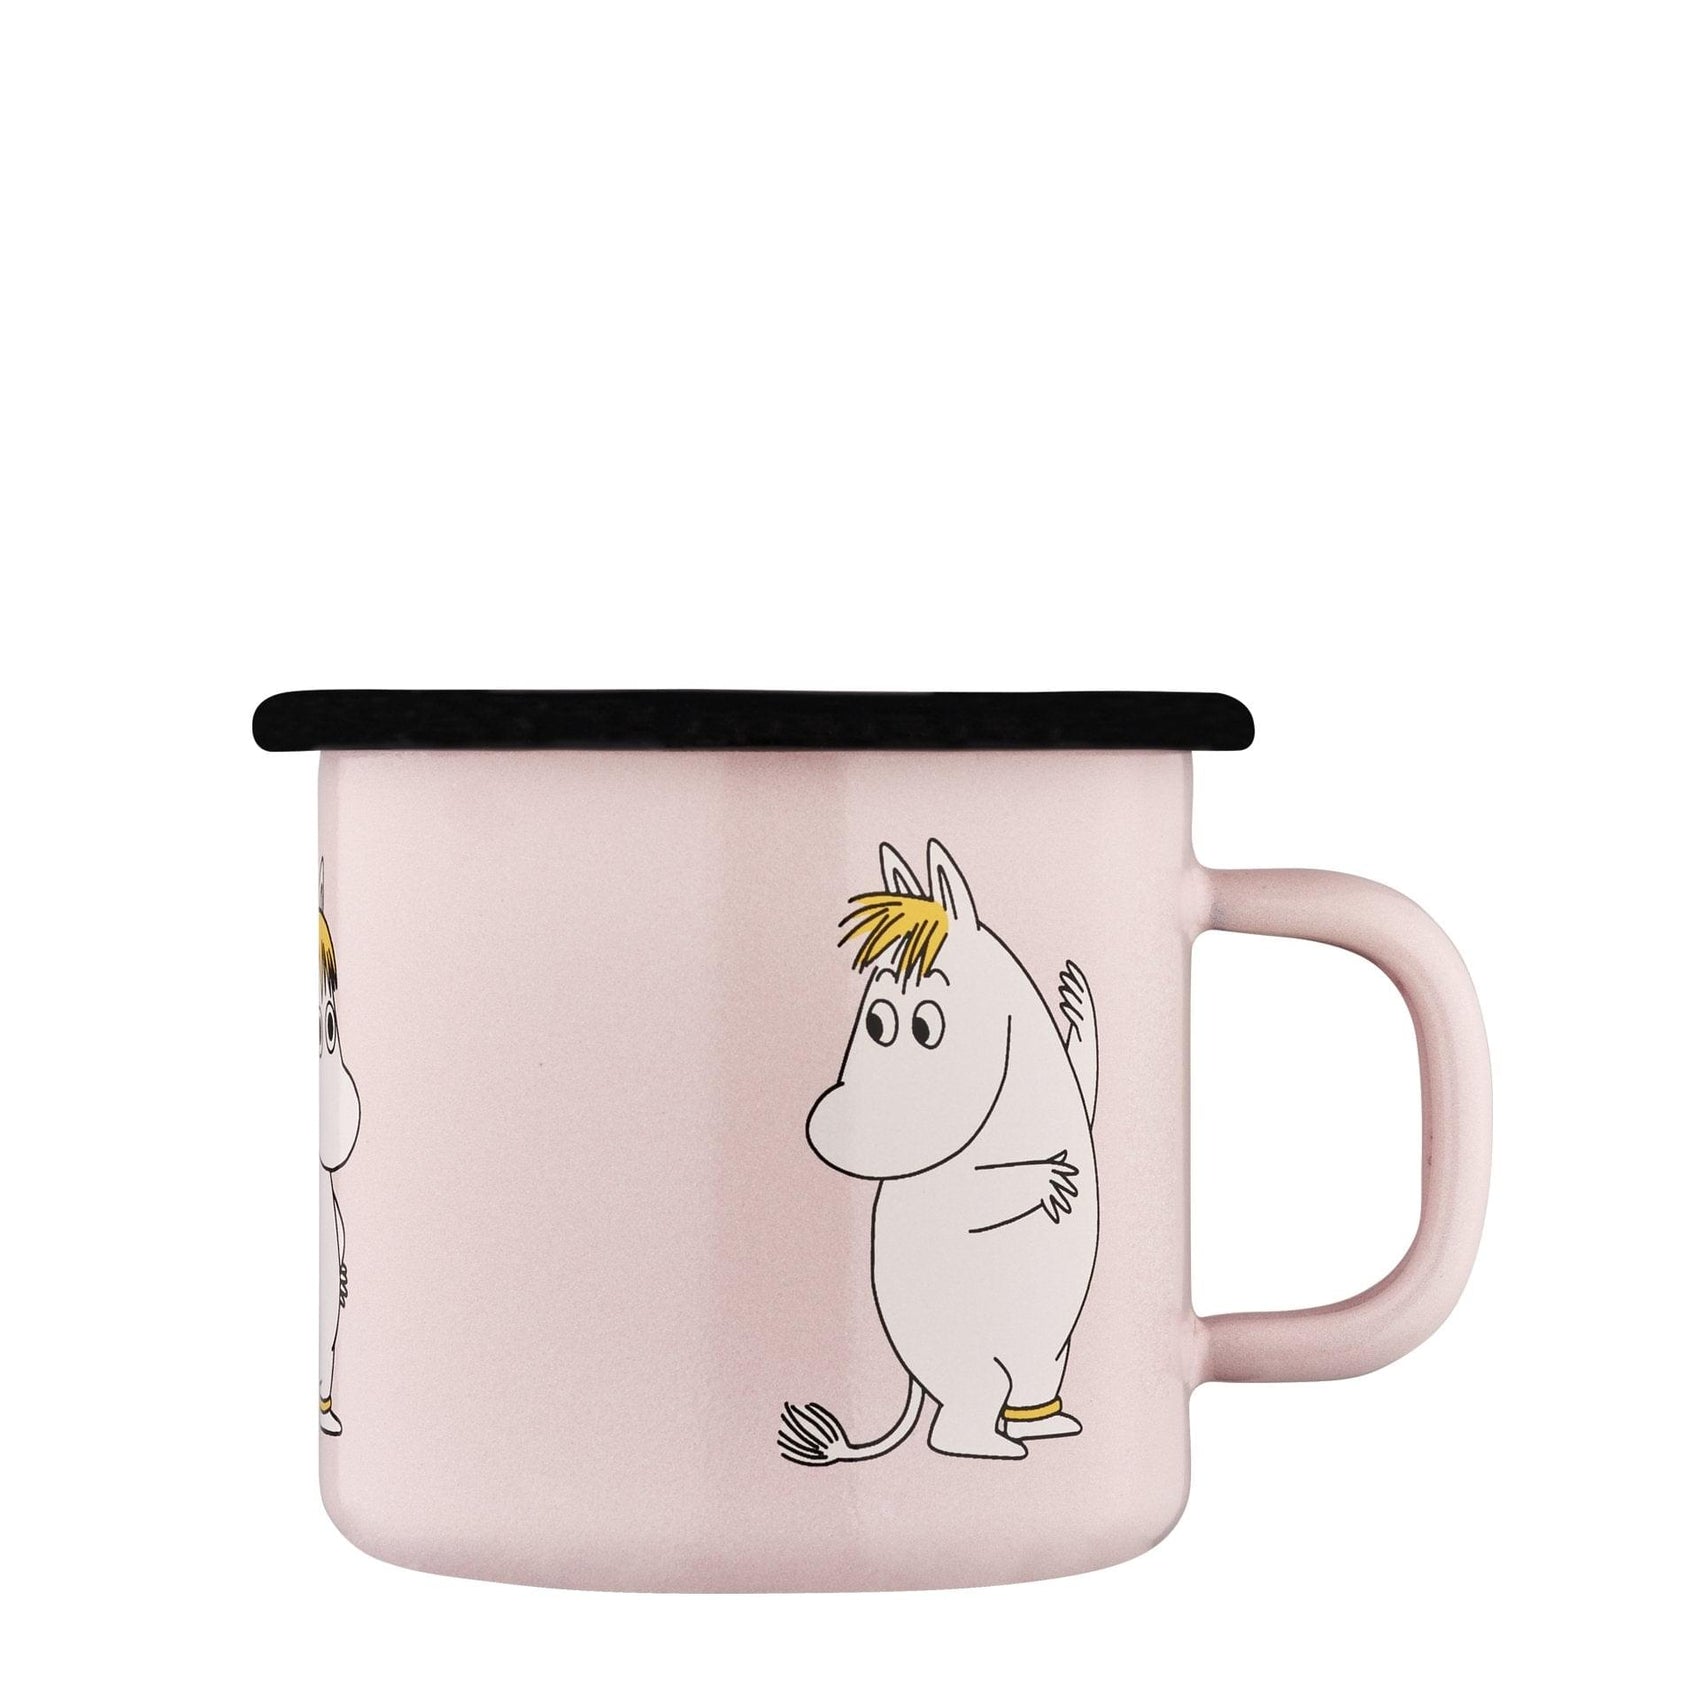 The Moomins enamel mug 2.5dl, Snorkfrøken Retro, light pink